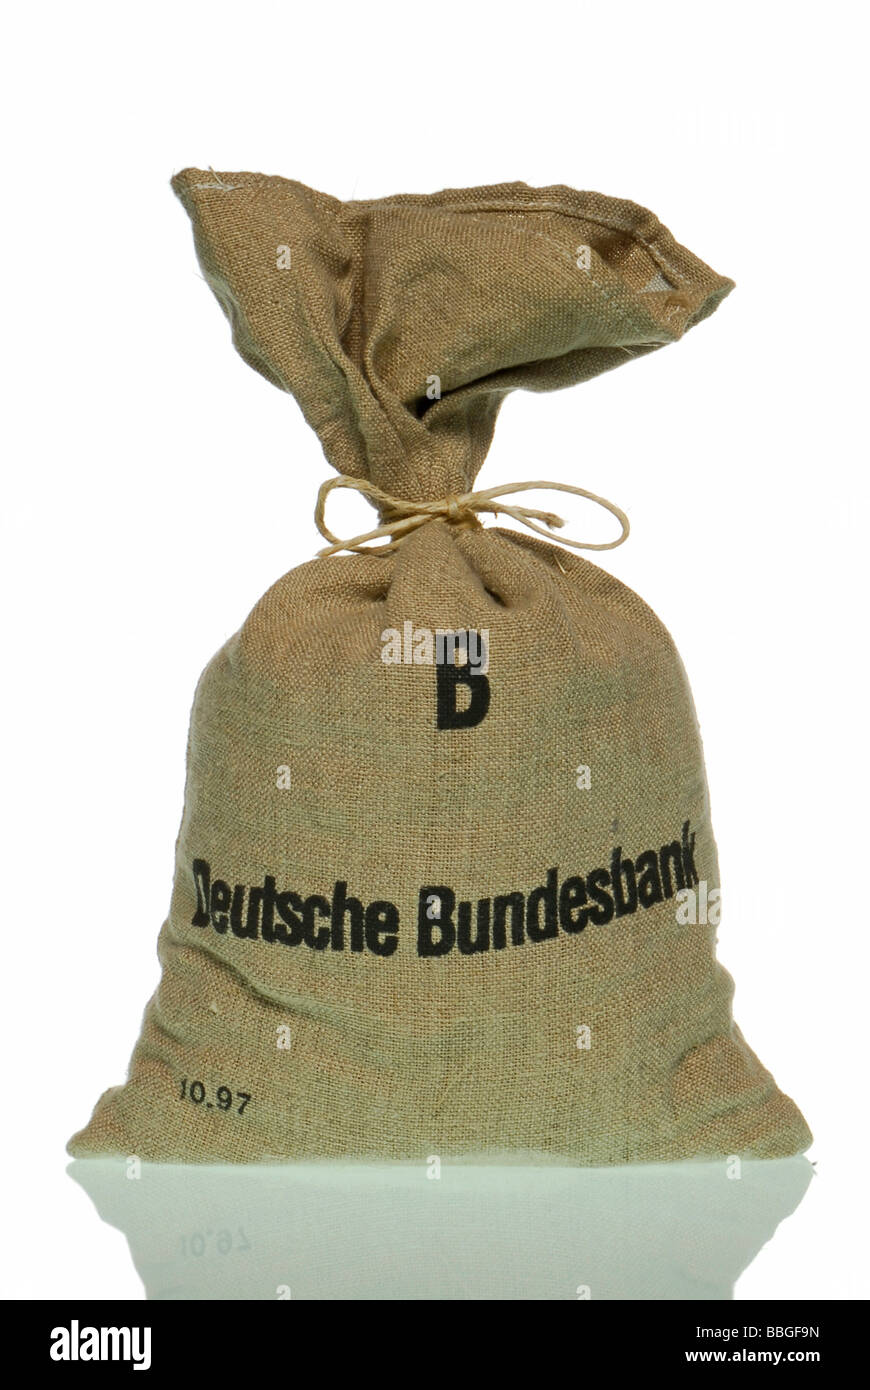 Money bag of the Deutsche Bundesbank, German Federal Bank Stock Photo